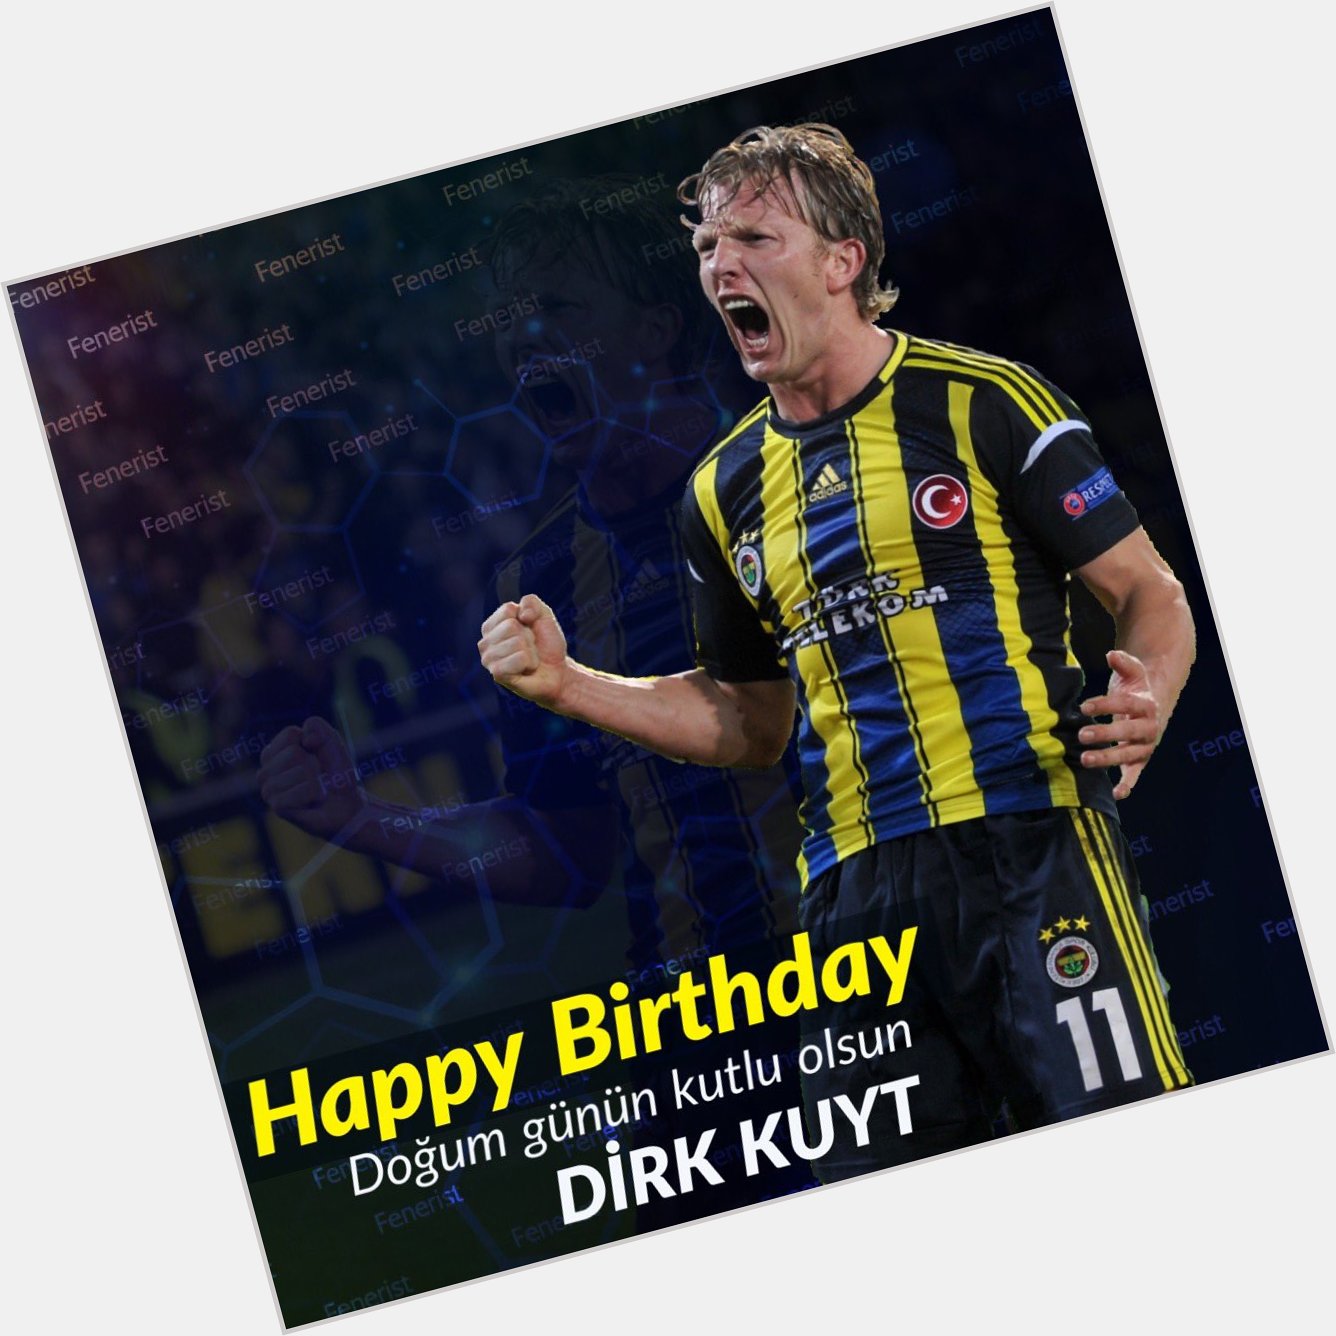 Do um günün kutlu olsun Dirk Kuyt

Happy Birthday Legend!   